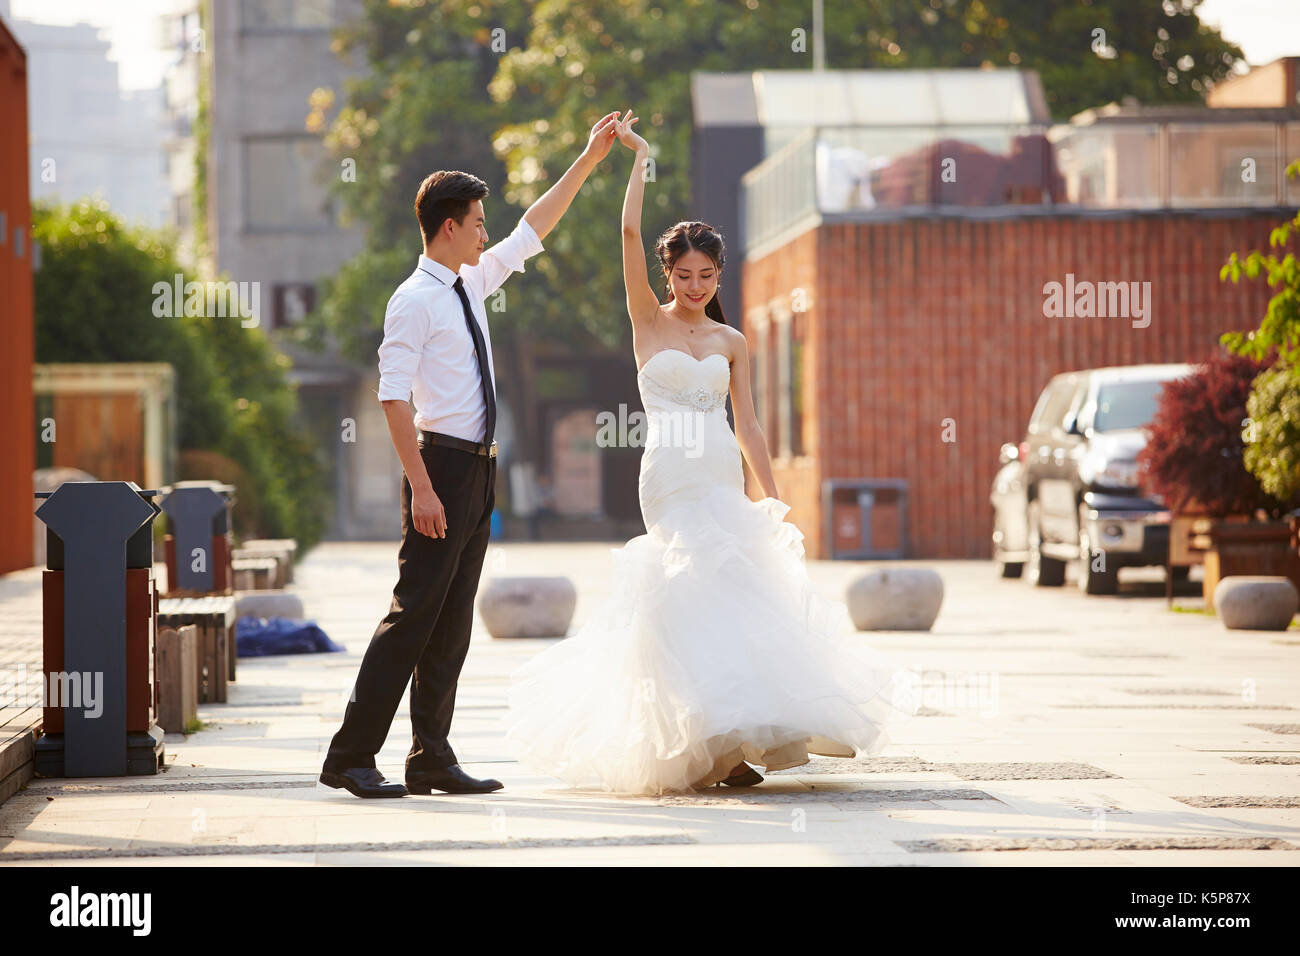 Junge asiatische Braut und Bräutigam in Wedding Dress tanzen auf dem Parkplatz. Stockfoto